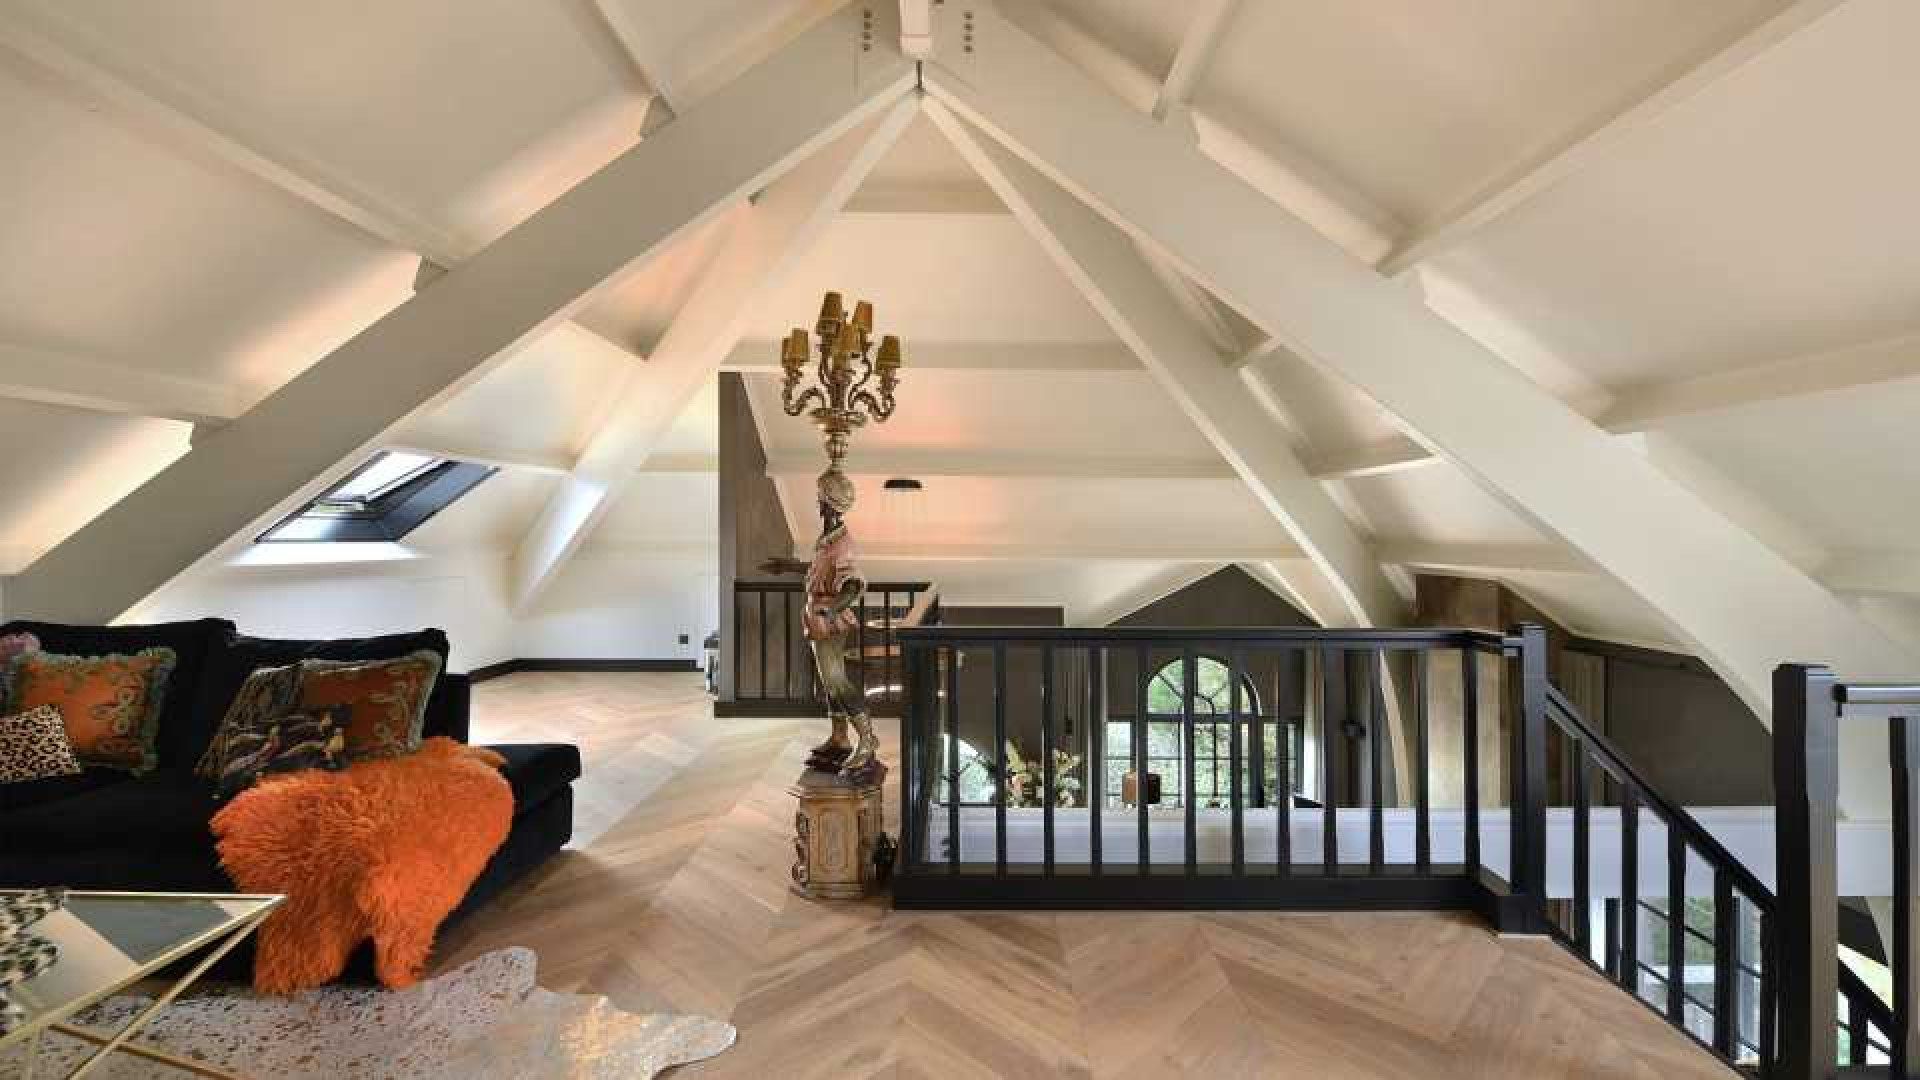 Martien en Erica Meiland hebben net voor deze prijs hun villa in Noordwijk te koop gezet. Zie foto's